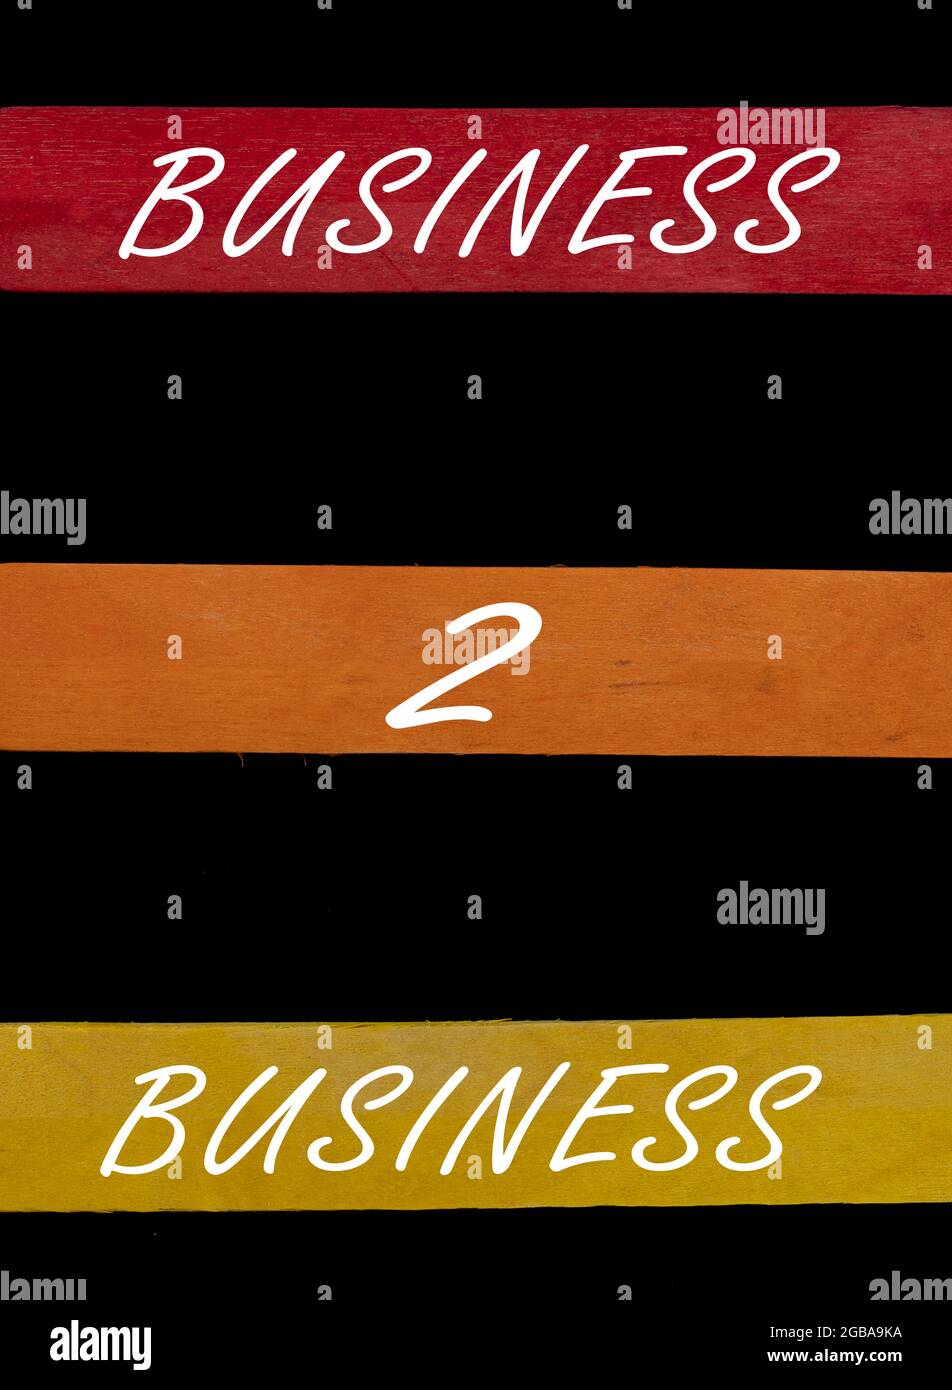 Business 2 testo aziendale su bastoni colorati disposti dall'alto verso il basso su sfondo nero Foto Stock